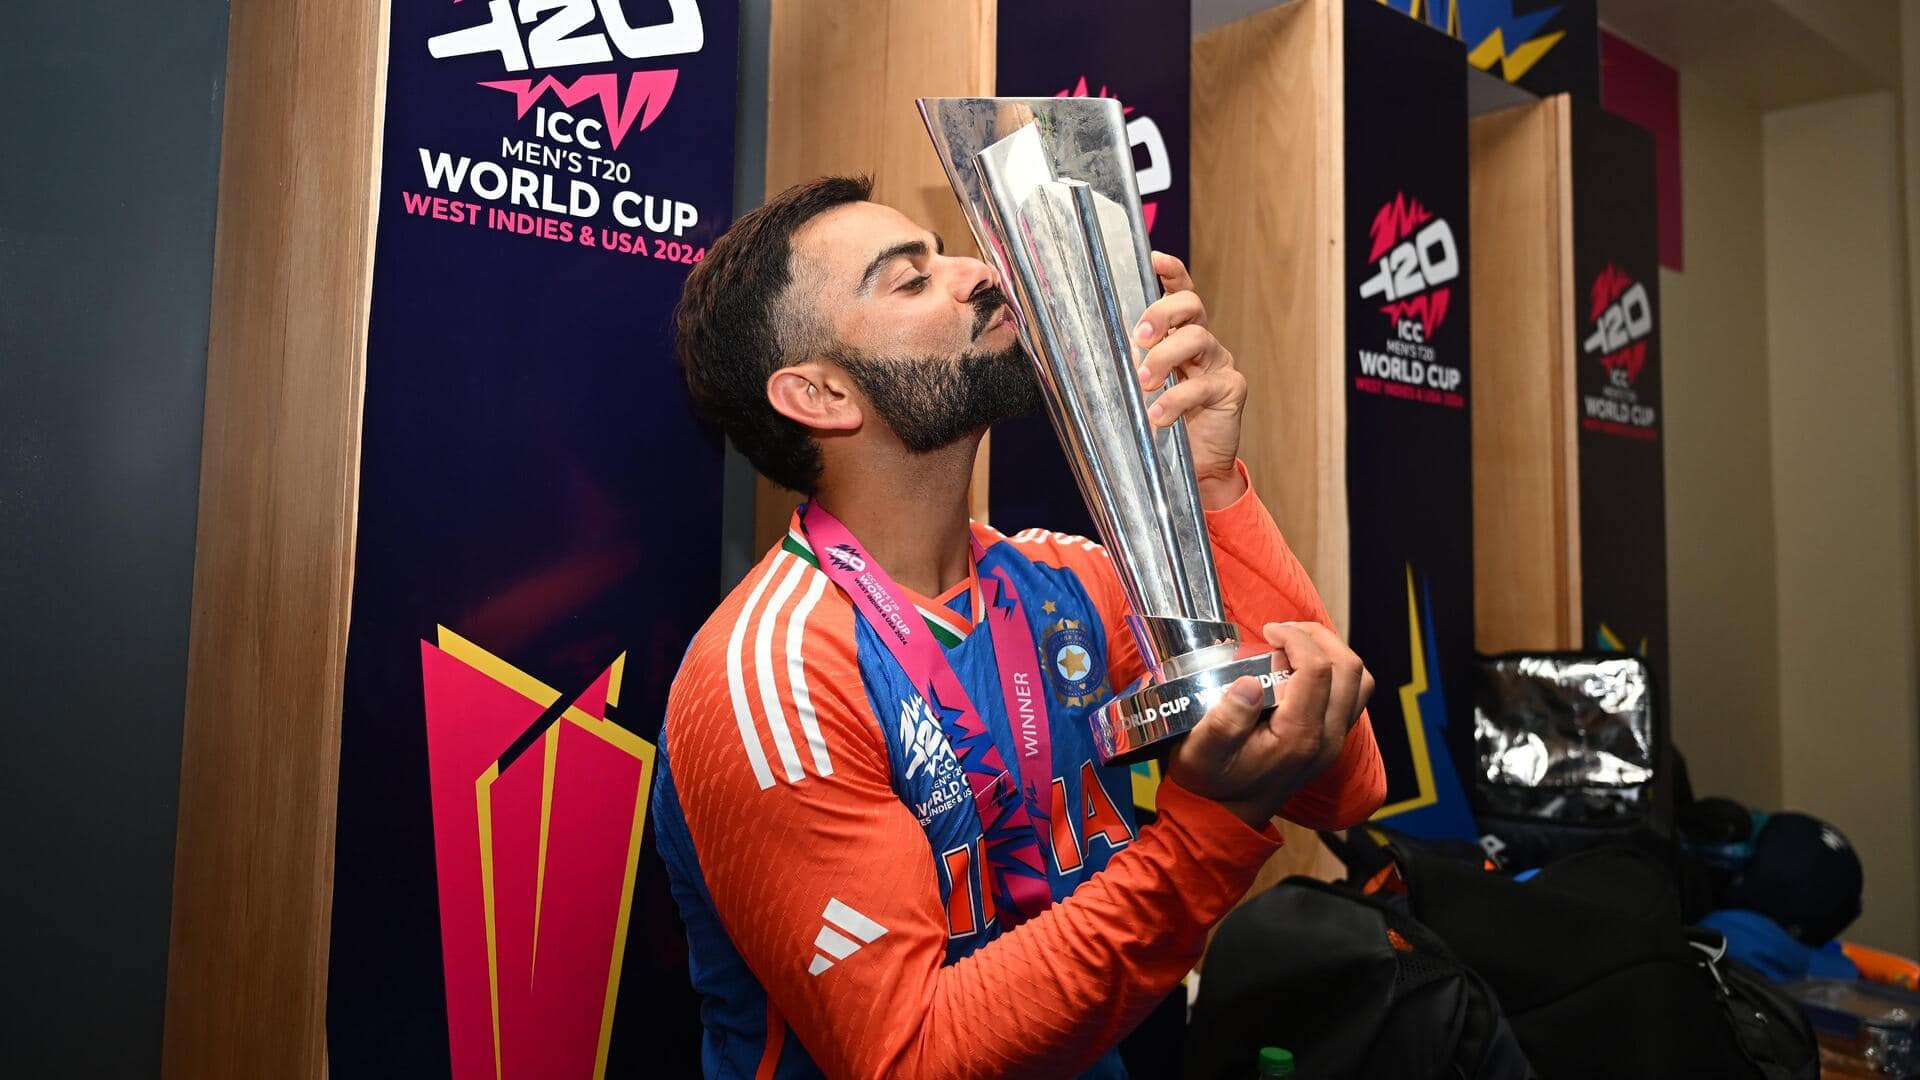 5 टी-20 विश्व कप हारने के बाद विराट कोहली ने जीती ट्रॉफी, जानिए उनका प्रदर्शन